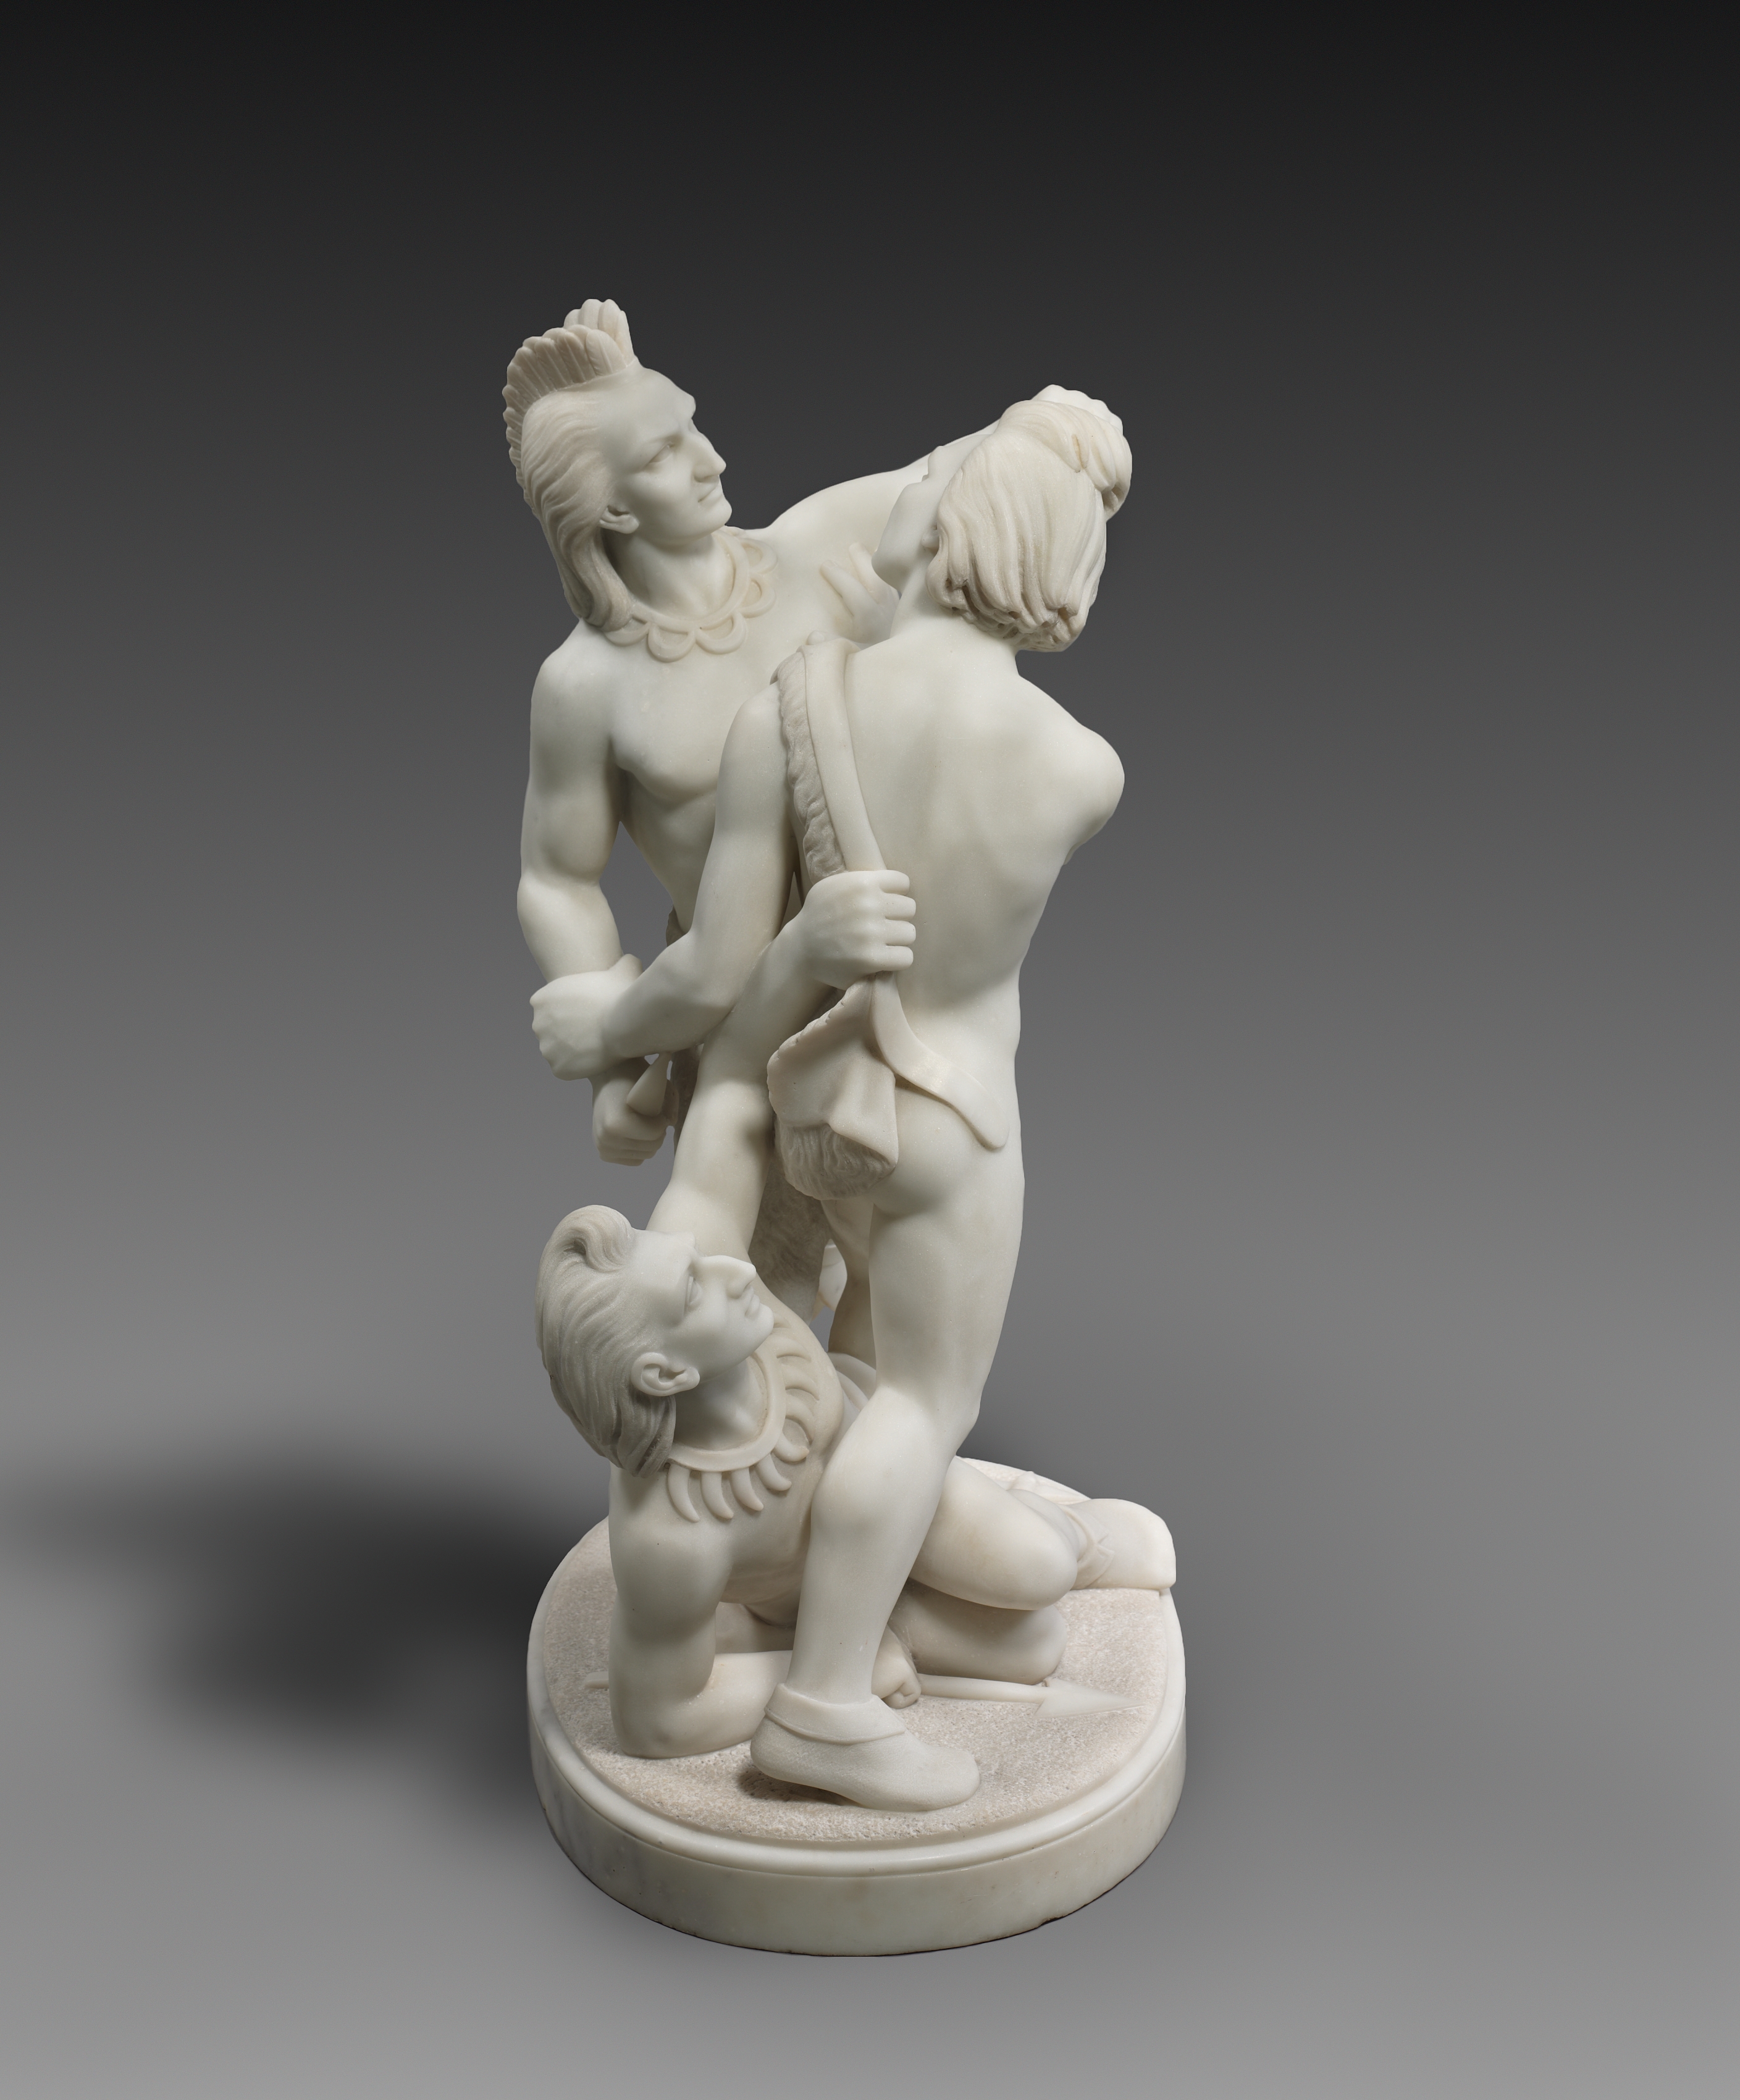 Ινδιάνικη Πάλη by Εντμόνια Λιούις - 1868 - 76.2 x 48.3 x 36.5 cm 